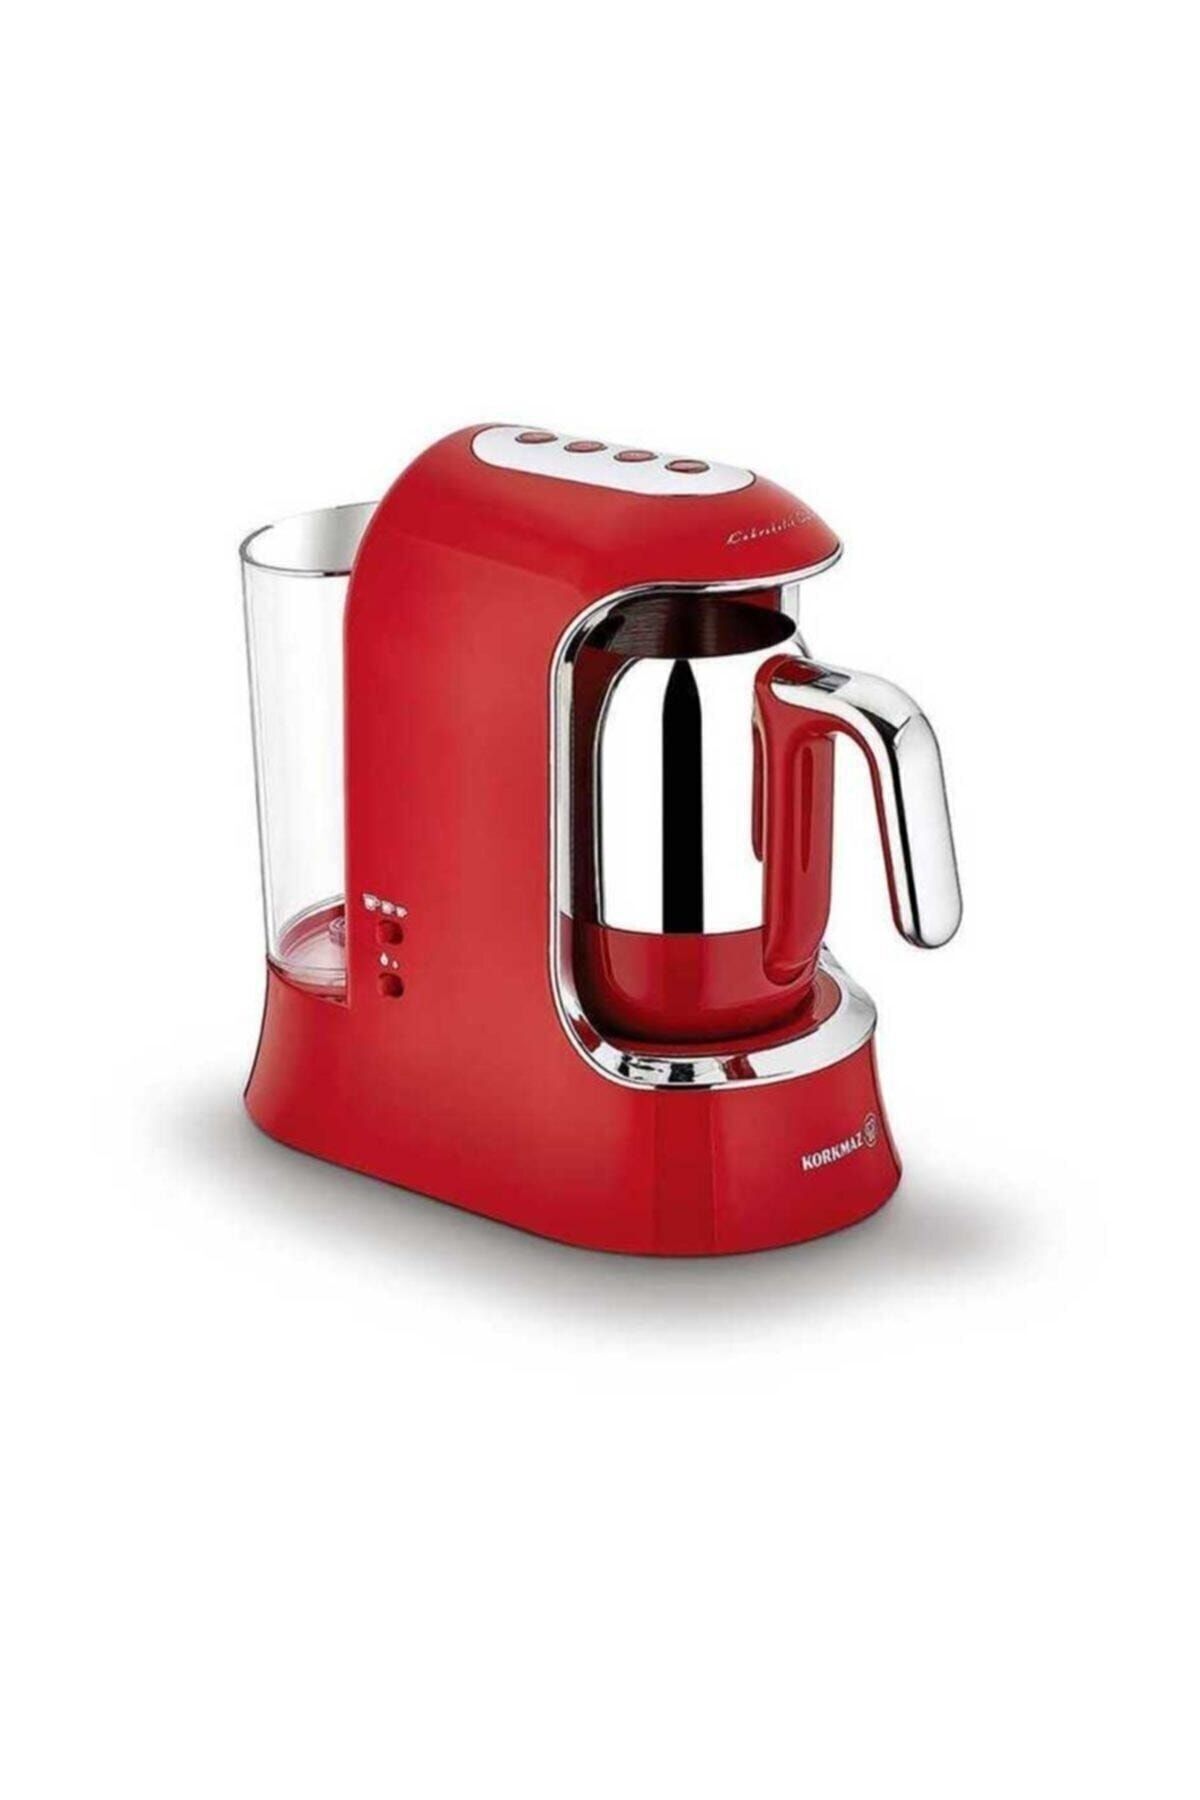 KORKMAZ Kahvekolik Aqua Kırmızı/krom Kahve Makinesi A862